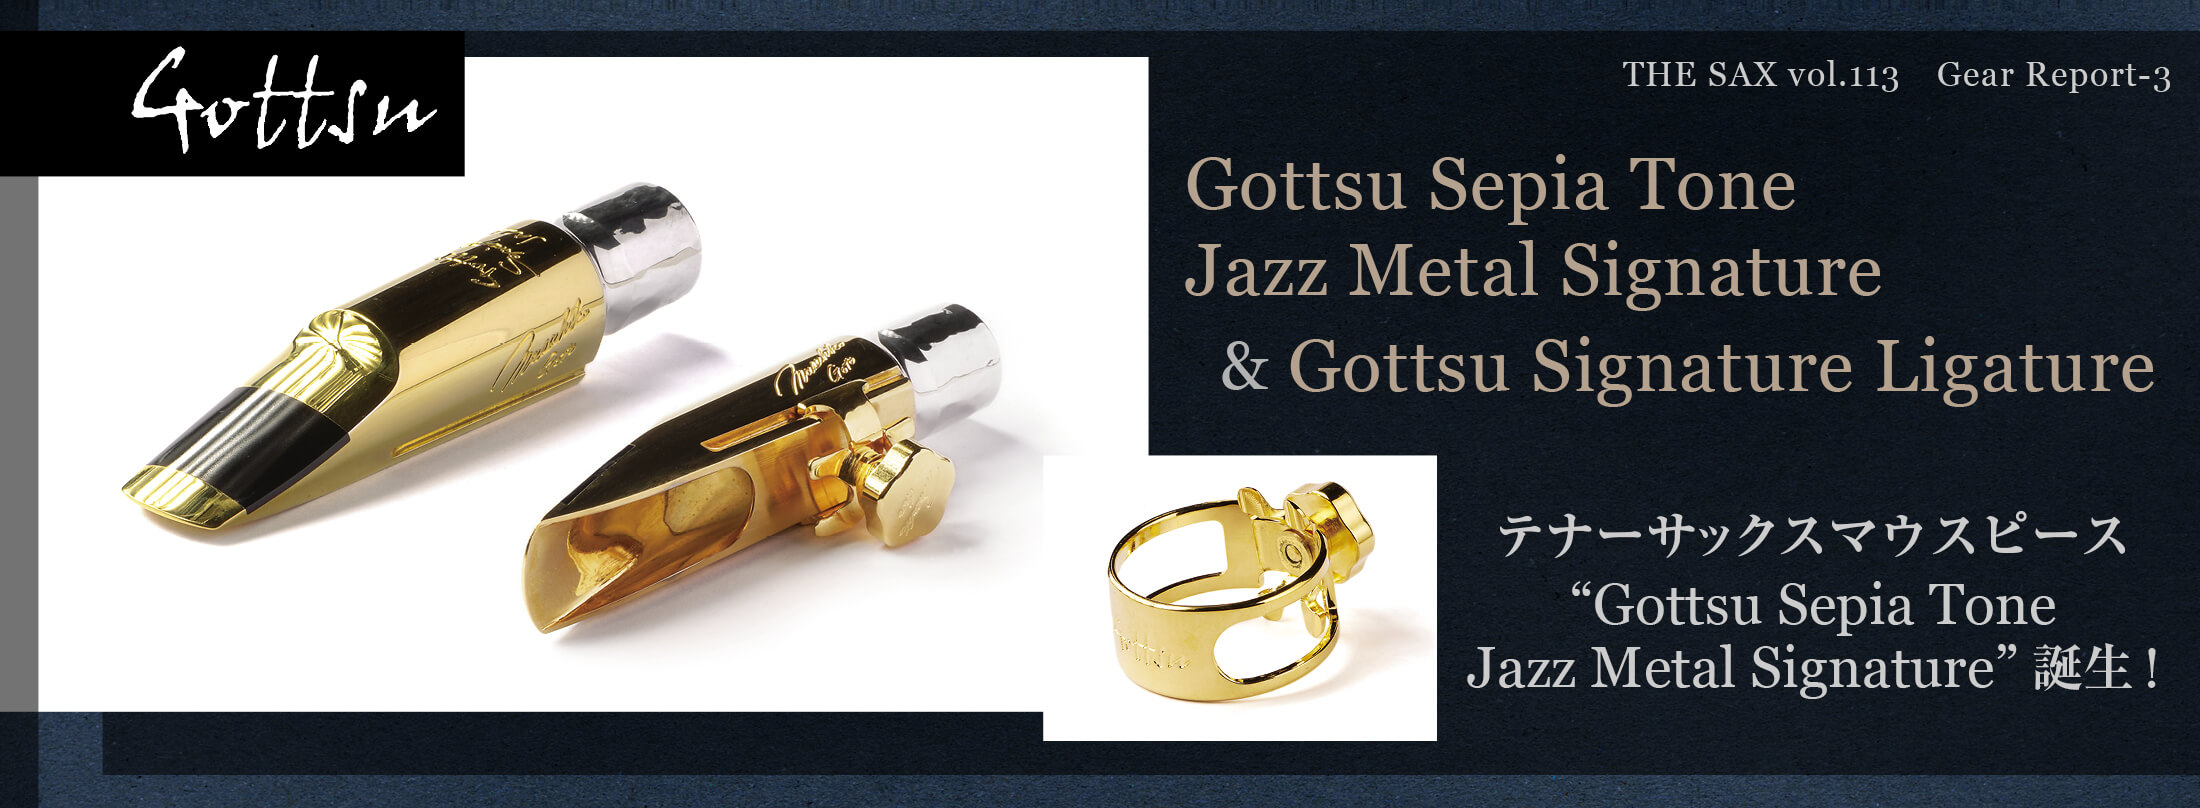 サックス記事 テナーサックス“Gottsu Sepia Tone Jazz Metal Signature”誕生!